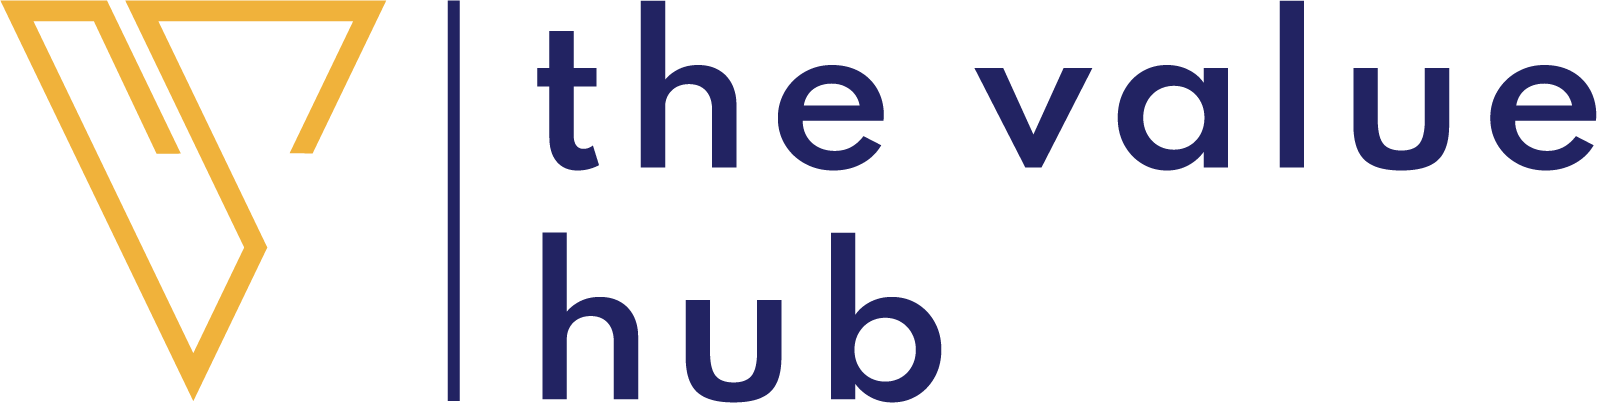 The Value Hub logo